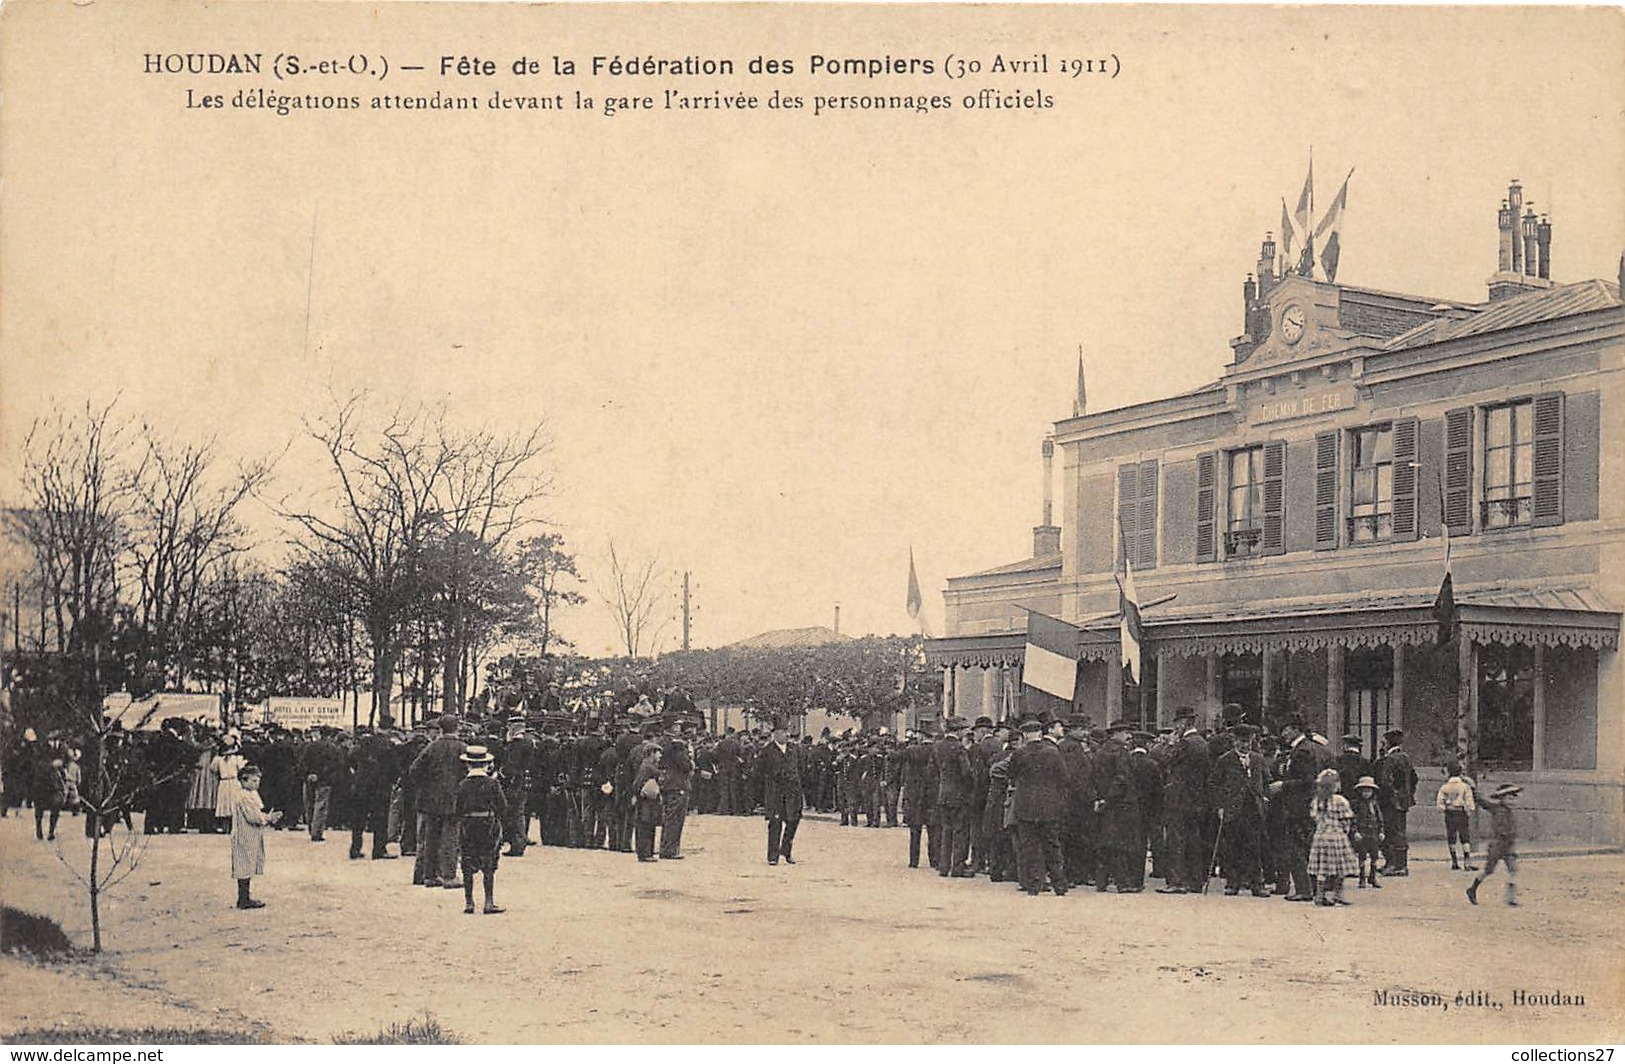 78-HOUDAN- FÊTE DE LA FEDERATION DES POMPIERS 30 AVRIL 1911 LA DELEGATIONS ATTENDANT DEVANT LA GARE .... - Houdan